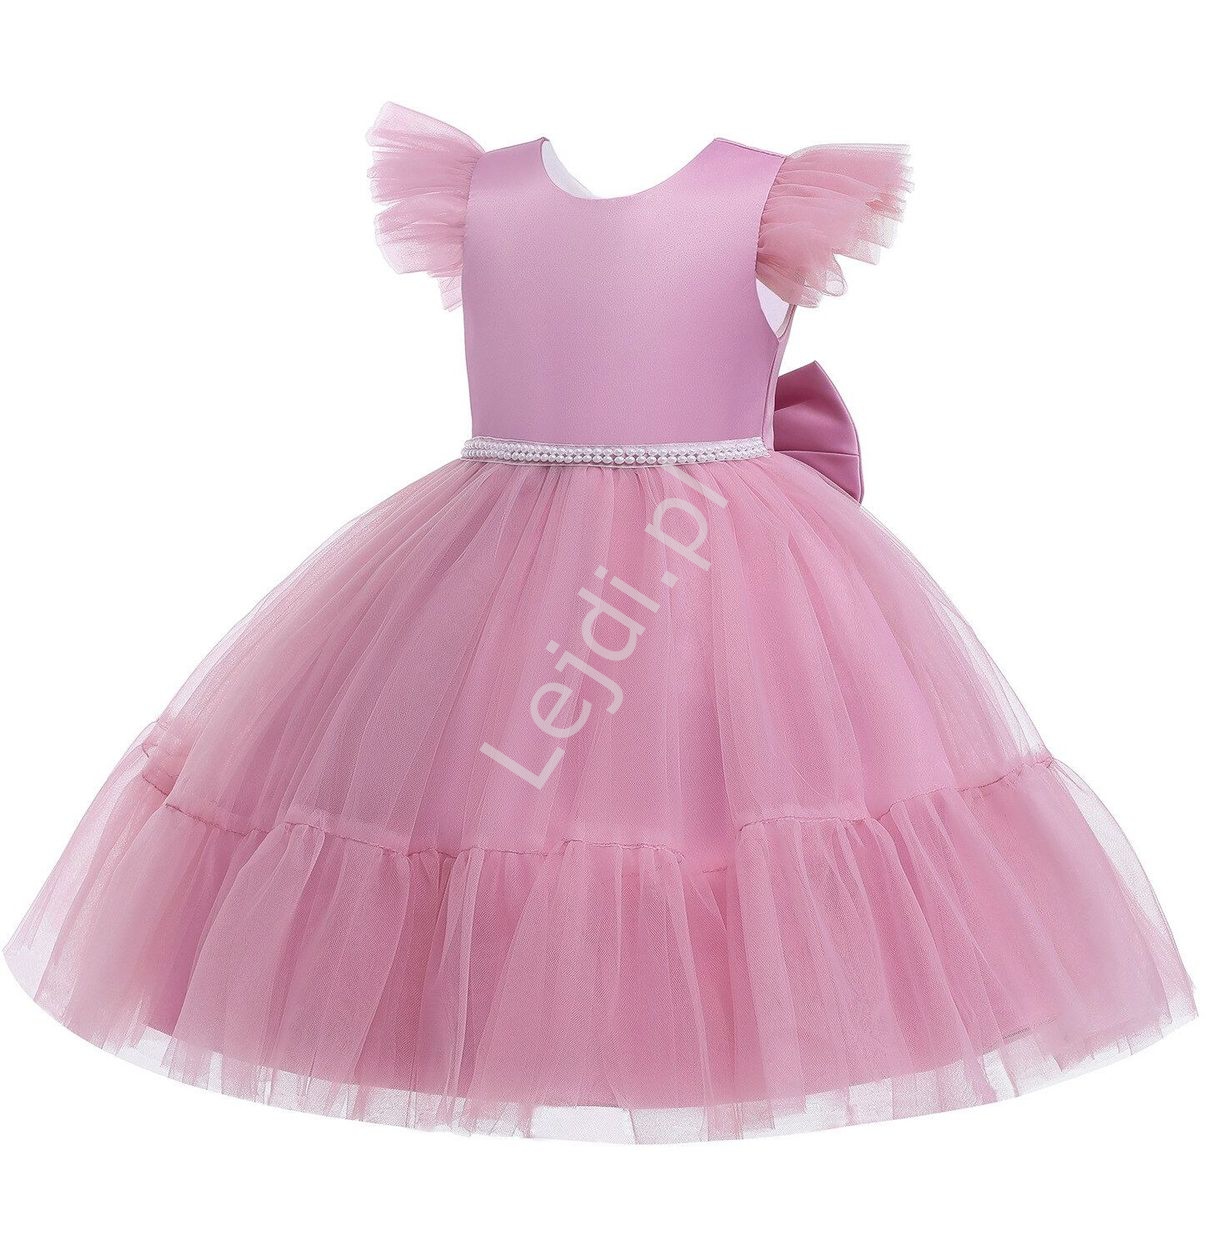 Elegancka sukienka dla dziewczynki w kolorze brudno różowym